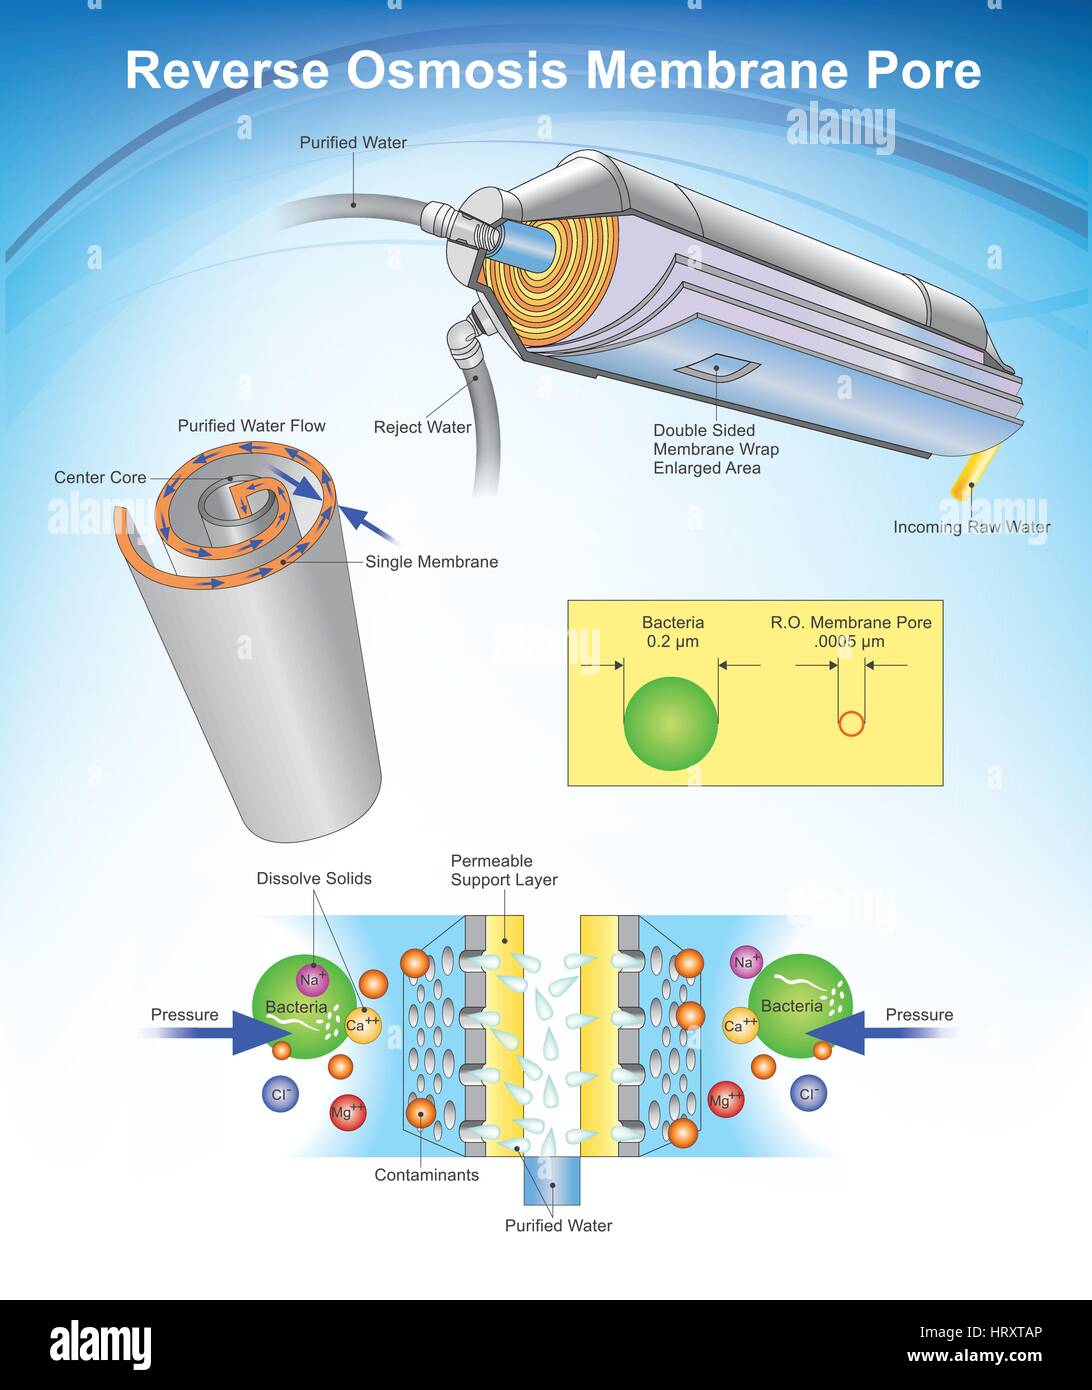 L'osmose inverse (OI) est une technologie de purification de l'eau qui utilise une membrane semi-perméable pour supprimer ions, molécules et particules plus grandes de drinki Illustration de Vecteur